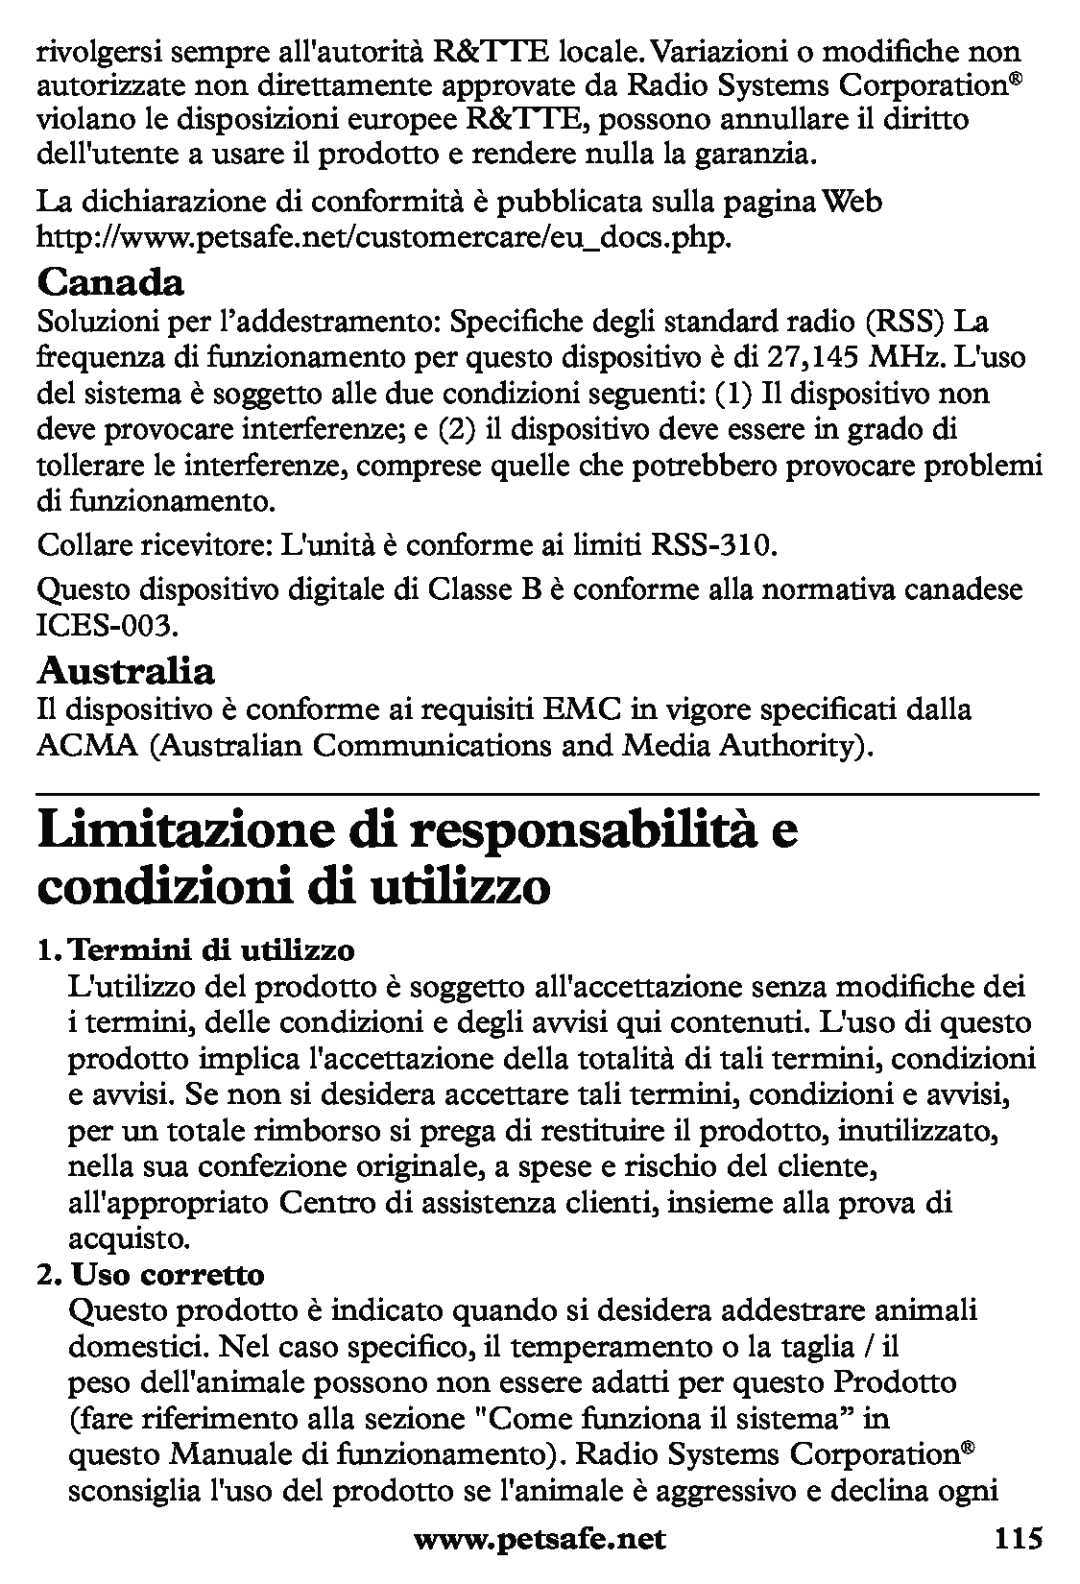 Petsafe PDT20-11939 Limitazione di responsabilità e condizioni di utilizzo, Termini di utilizzo, Uso corretto, Canada 